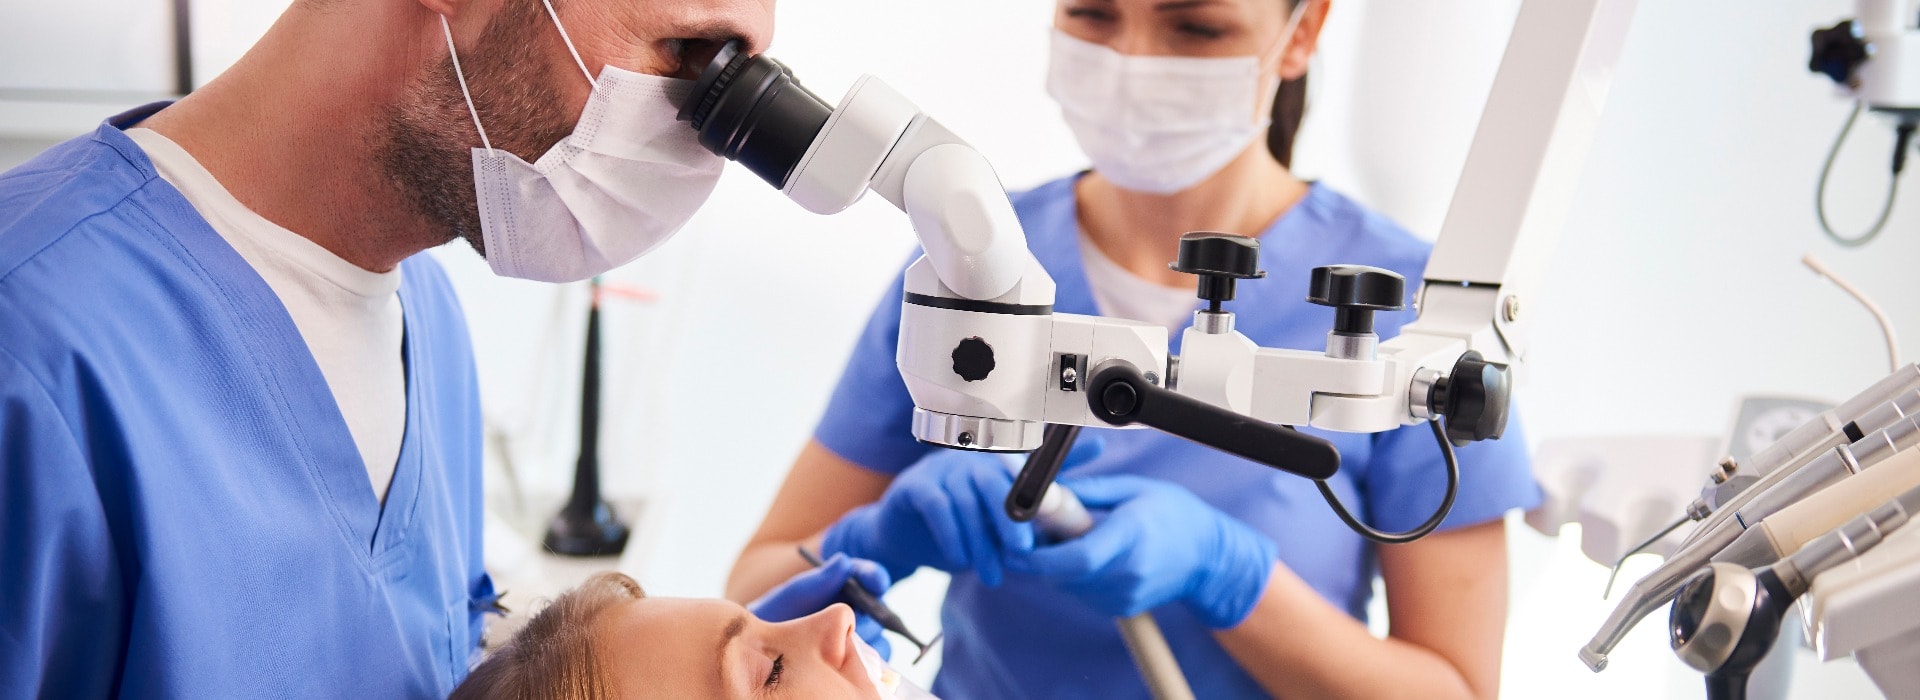 Männlicher Zahnarzt bei der Arbeit mit einem Dentalmikroskop